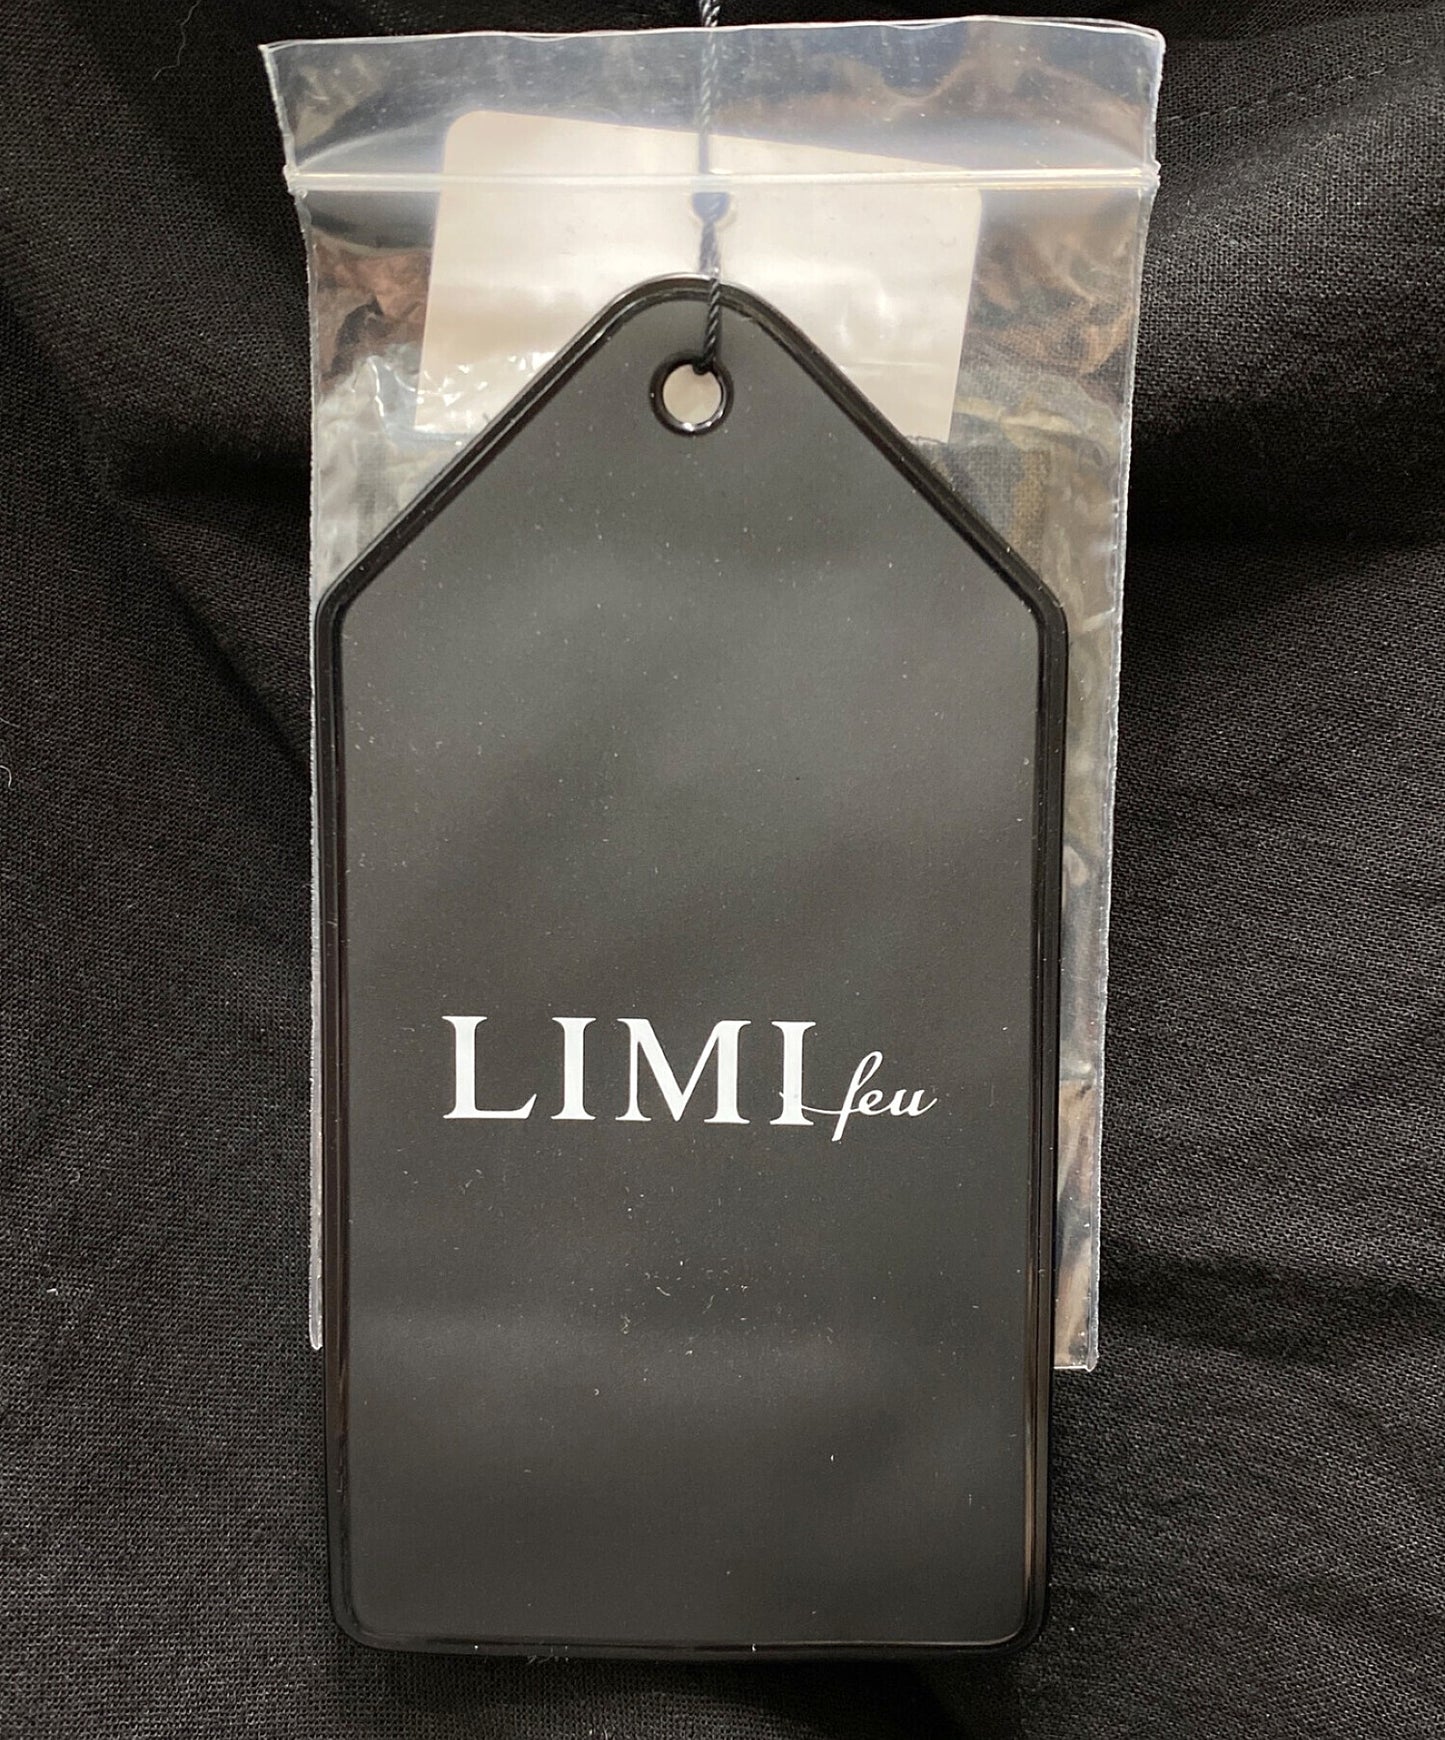 limi feu c/li calico a垂裙ld-d21-003